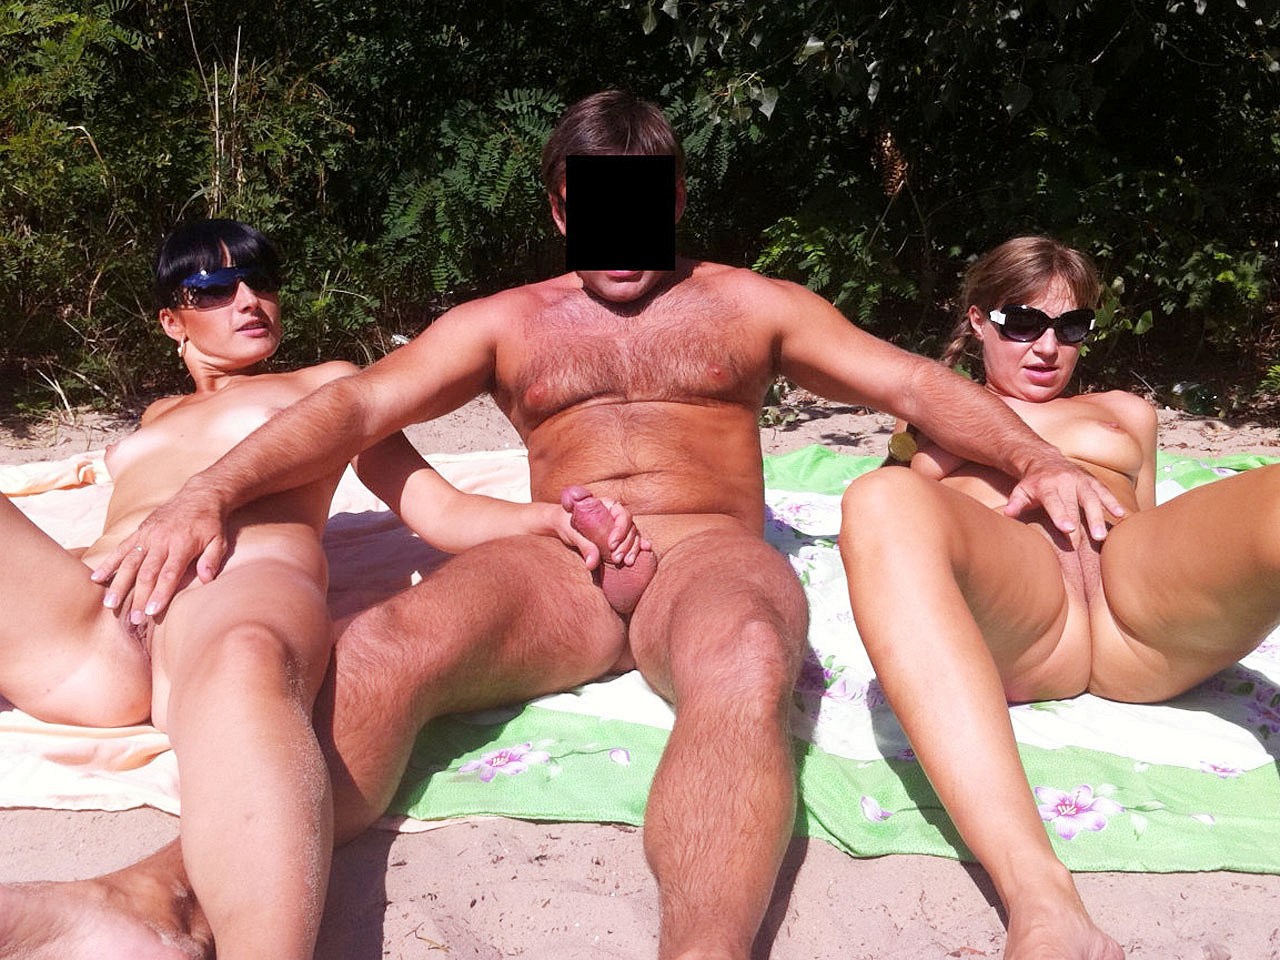 Sex swingers on a nudist beach (67 photos)